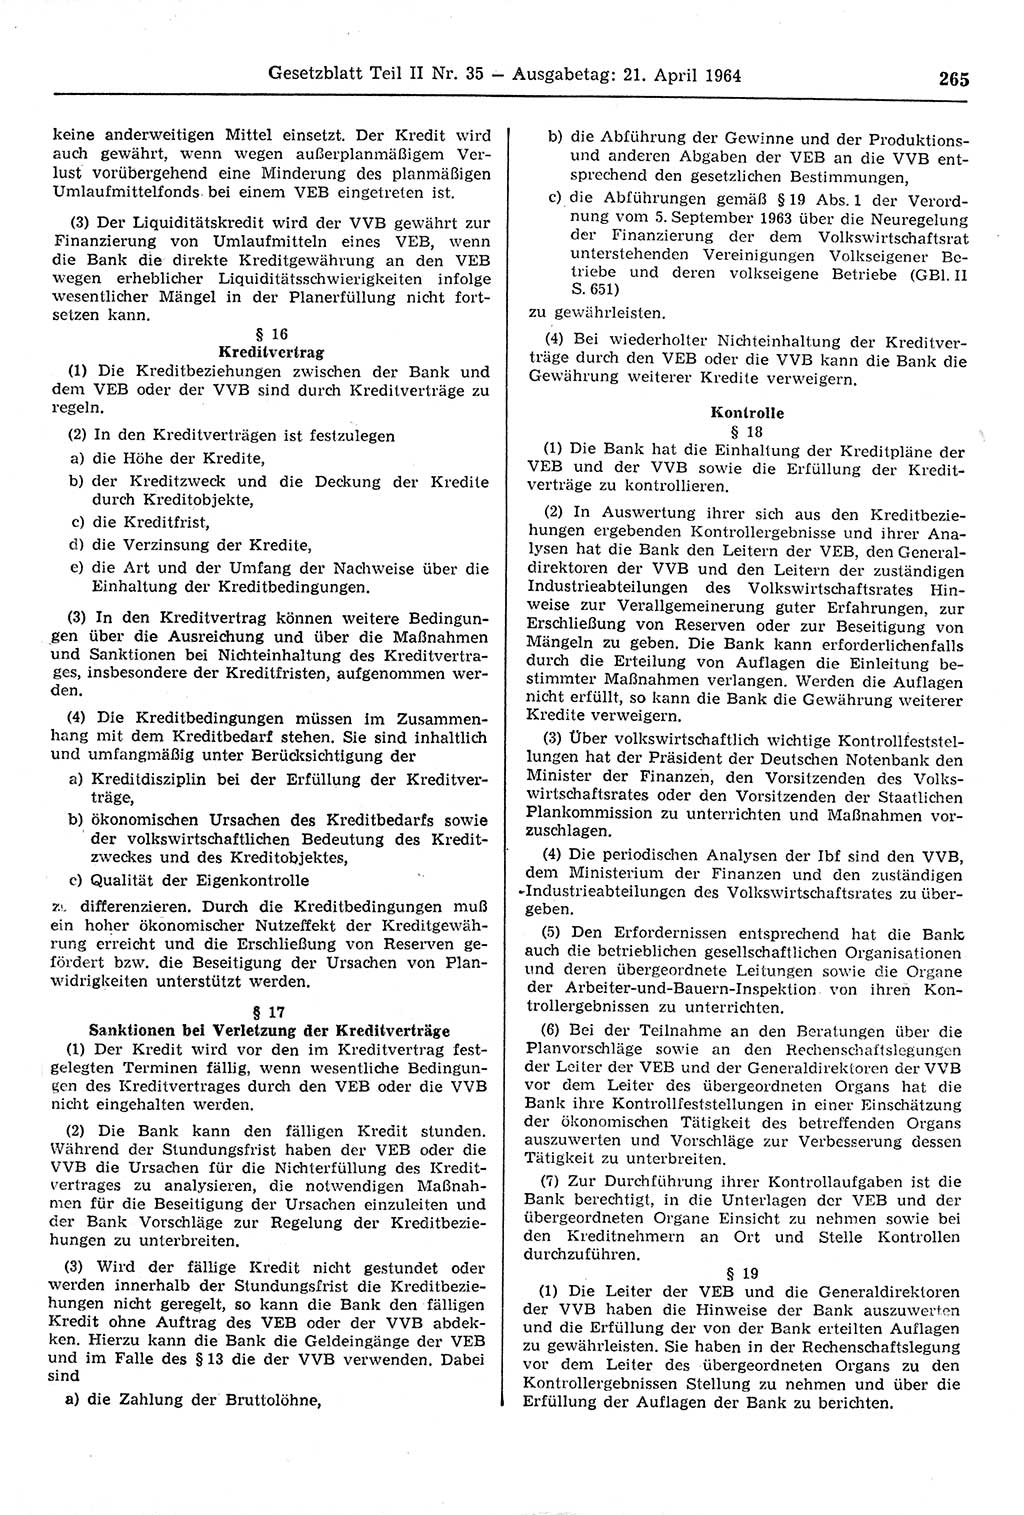 Gesetzblatt (GBl.) der Deutschen Demokratischen Republik (DDR) Teil ⅠⅠ 1964, Seite 265 (GBl. DDR ⅠⅠ 1964, S. 265)